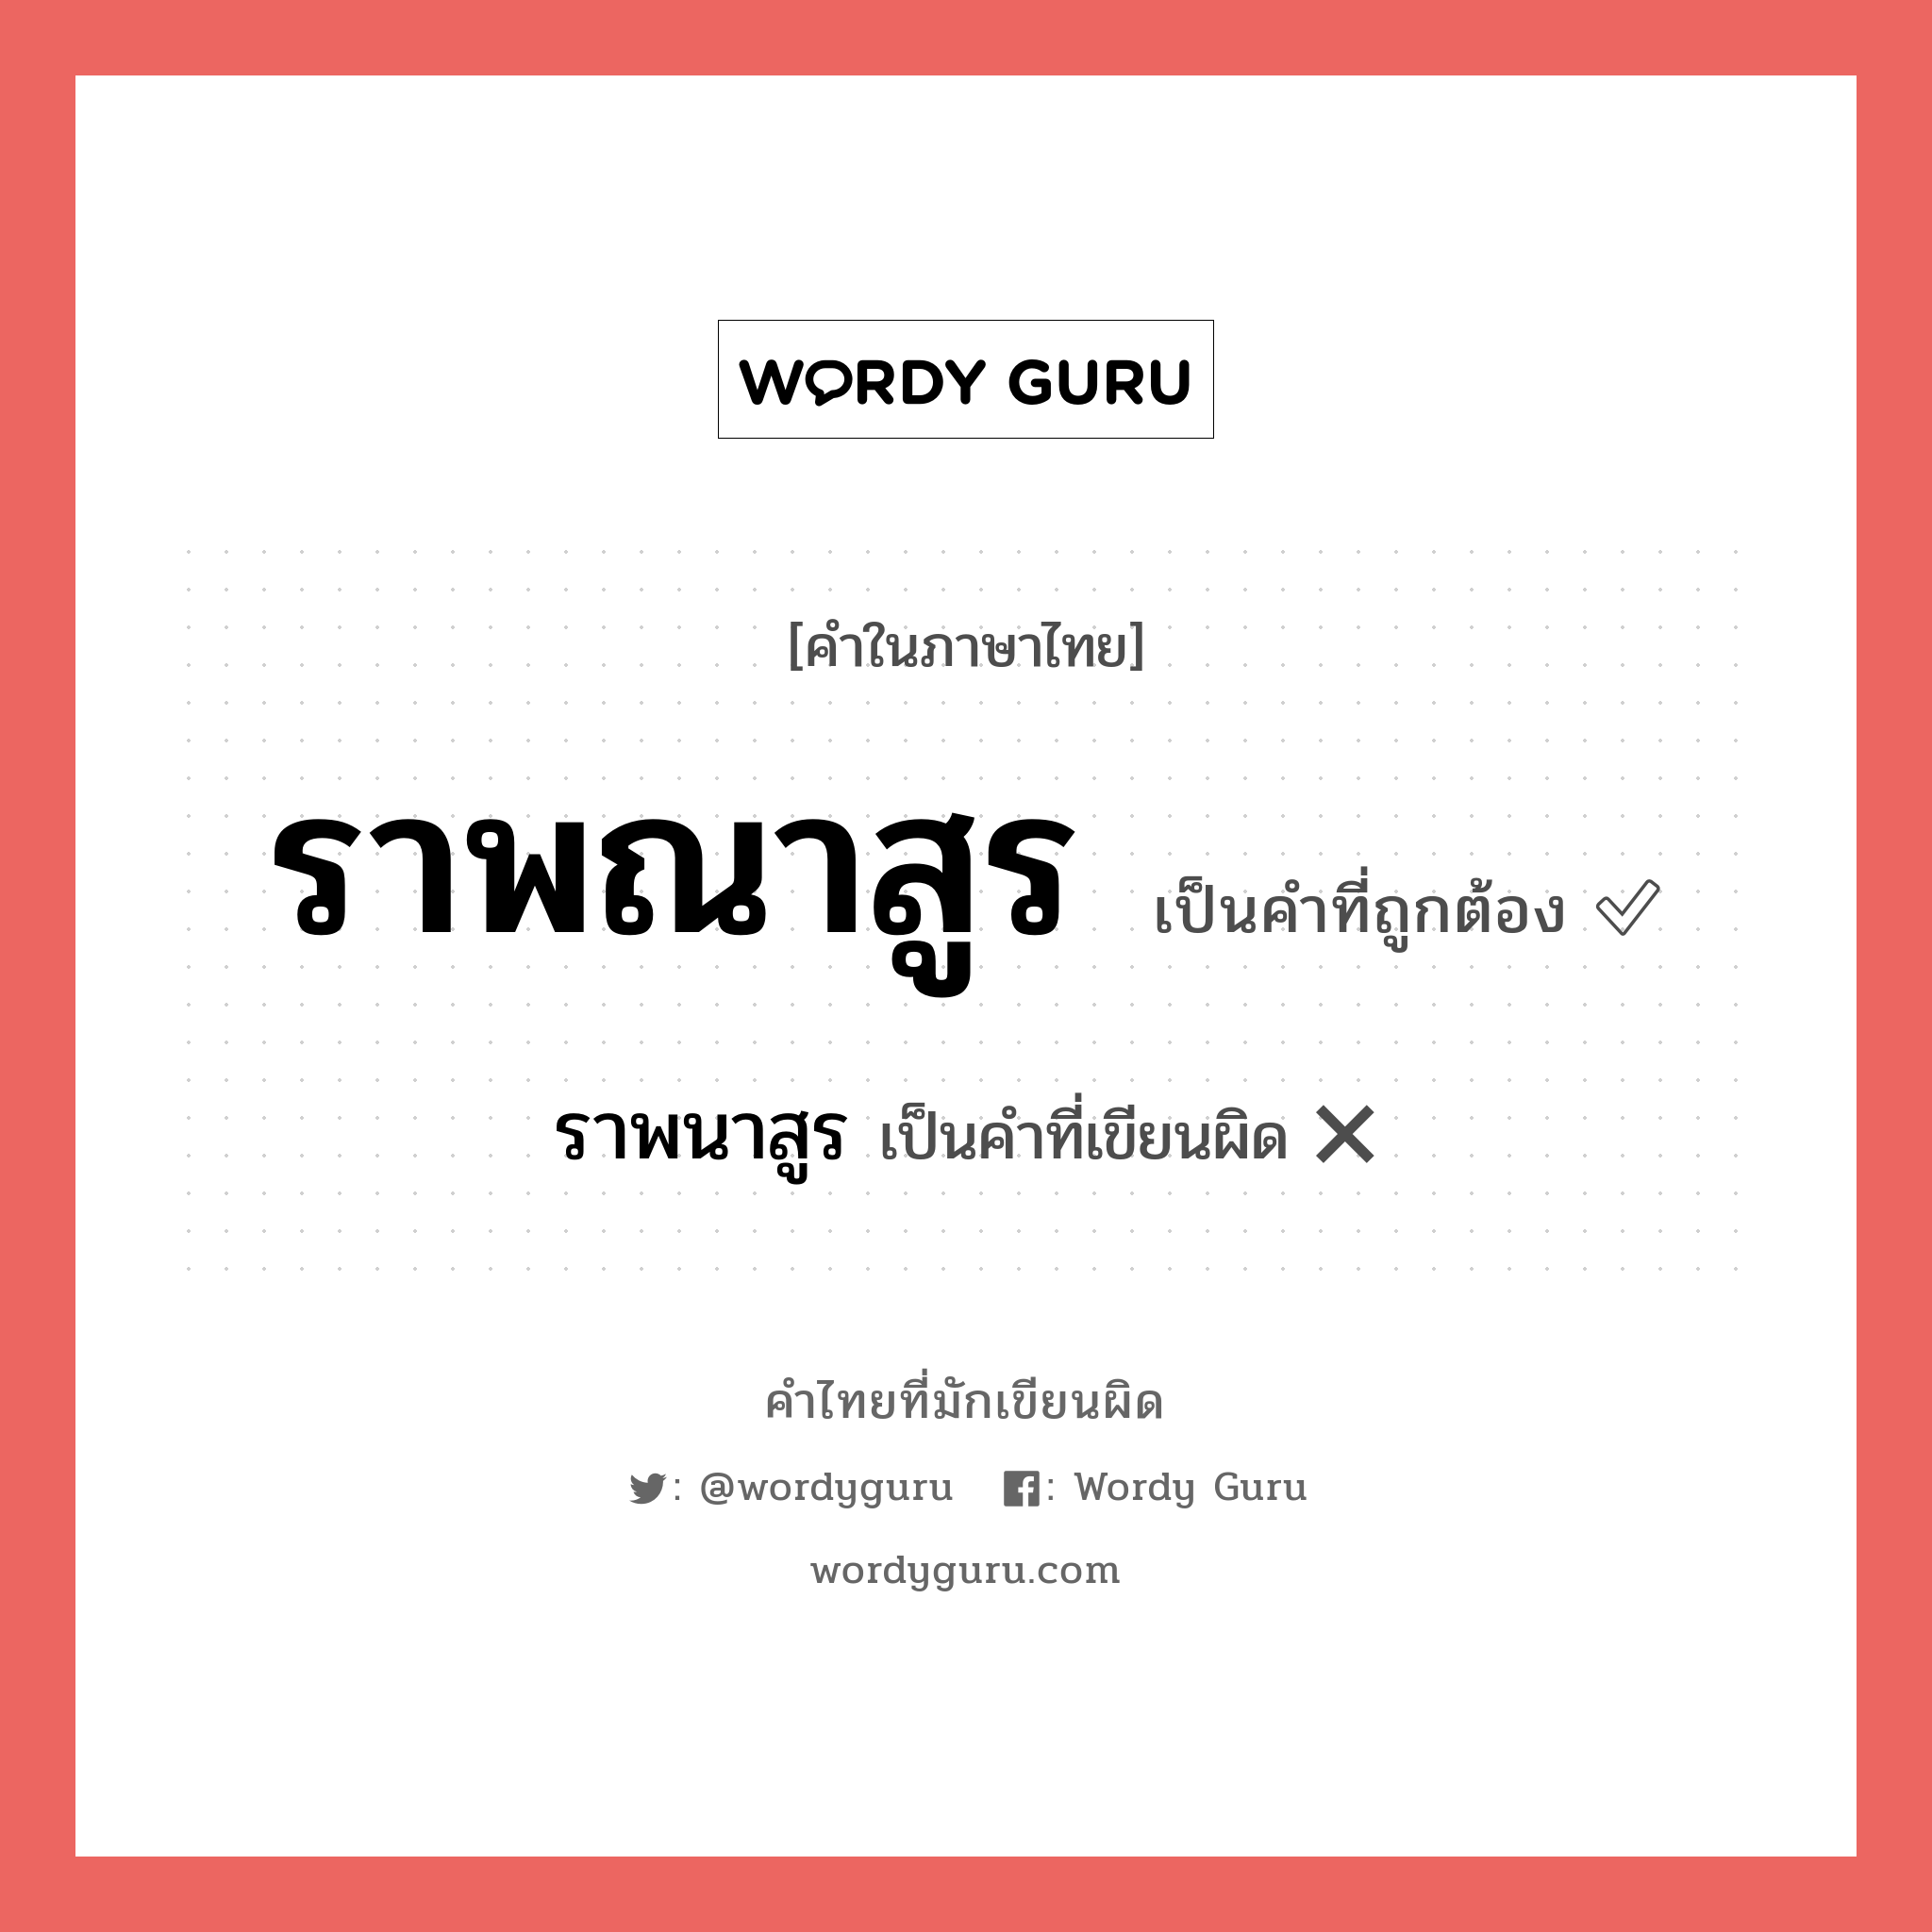 ราพนาสูร หรือ ราพณาสูร คำไหนเขียนถูก?, คำในภาษาไทยที่มักเขียนผิด ราพนาสูร คำที่ผิด ❌ ราพณาสูร